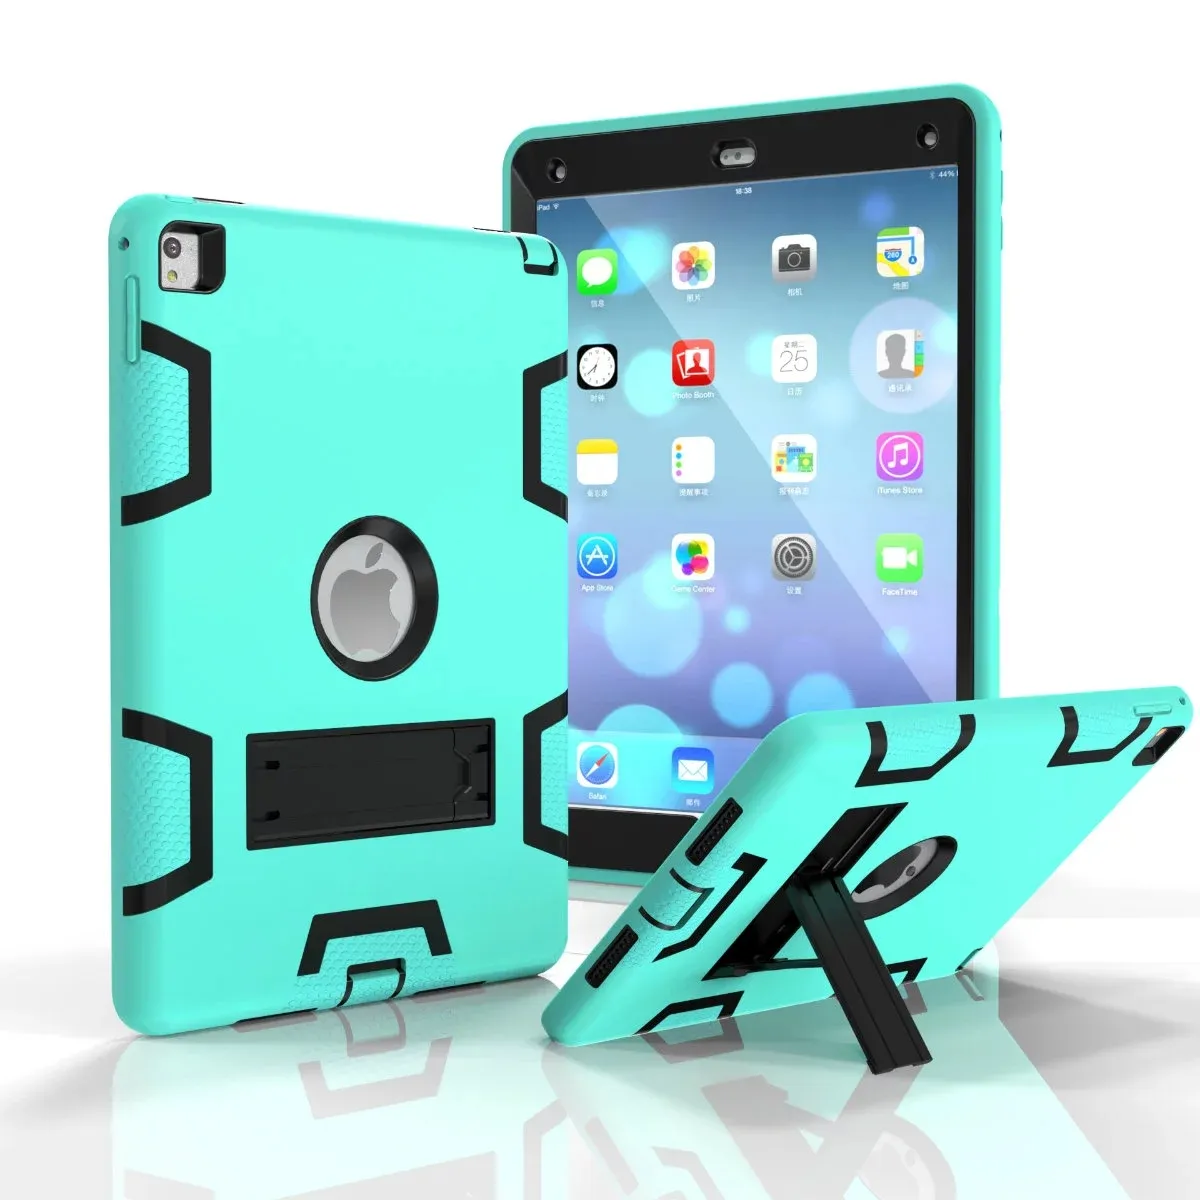 Een Type Heavy Duty Schokbestendige Kickstand Hybride Robot Case Cover voor iPad Pro 9.7 PRO 10.5 iPad 2 3 4 AIR 1 AIR 2 / PARTIJ